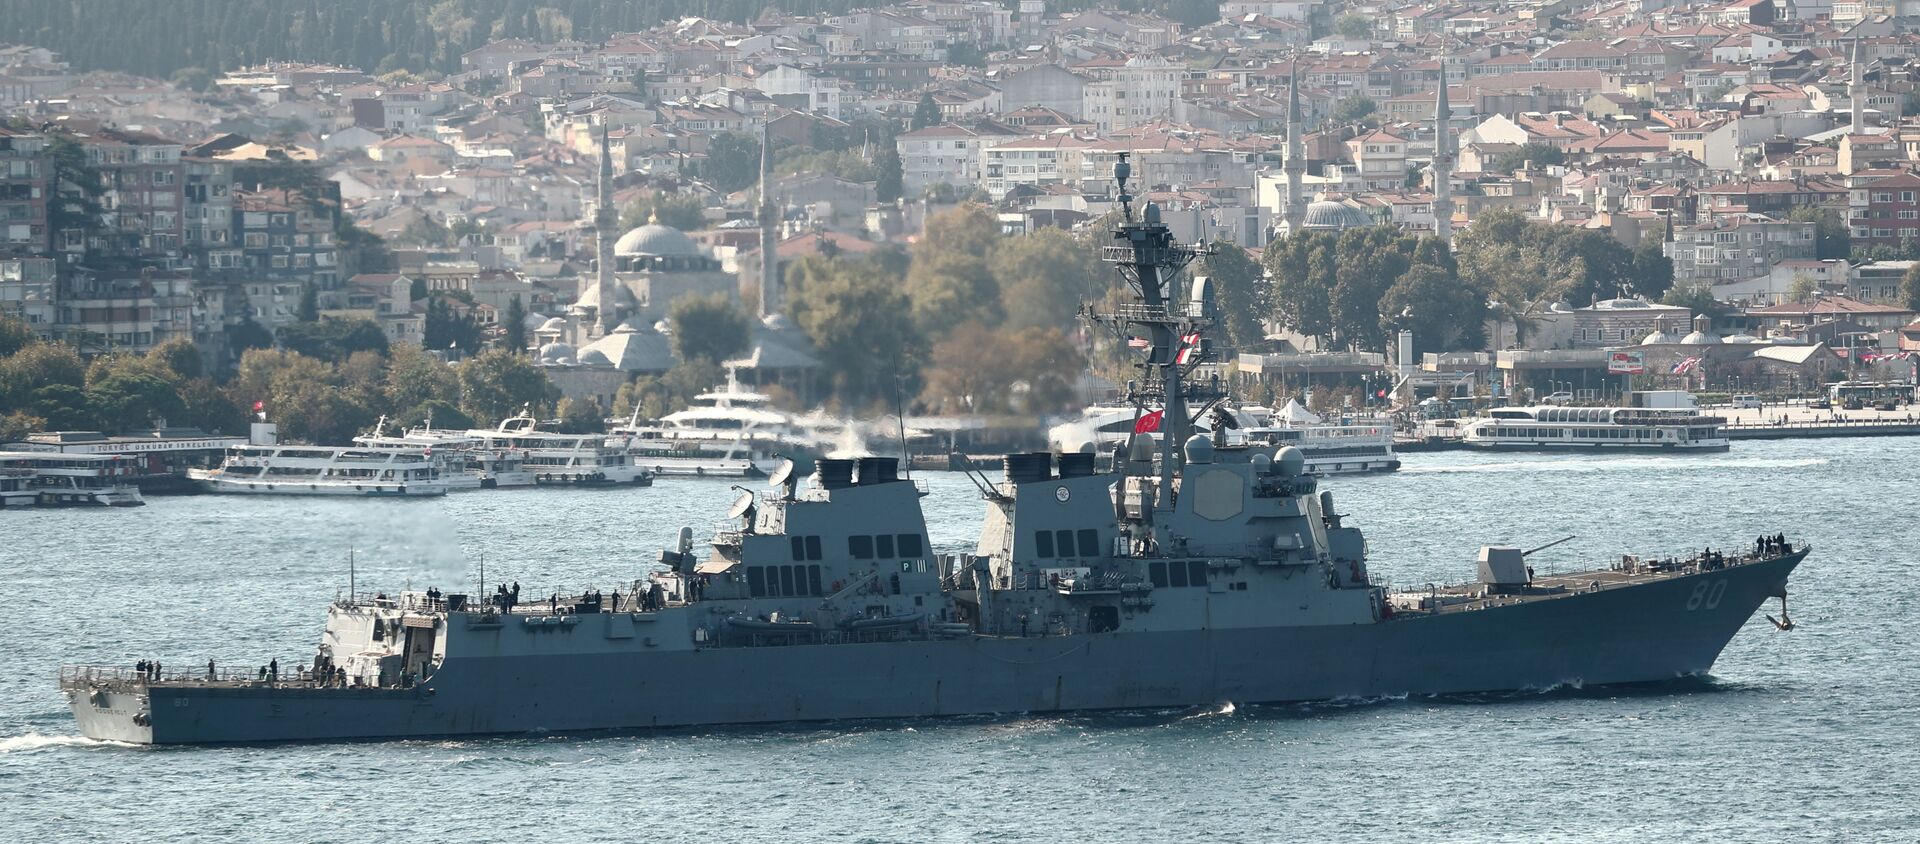 Эсминец ВМС США типа Arleigh-Burke USS Roosevelt (DDG 80) отправляется в плавание по Босфору, возвращаясь из Черного моря, в Стамбуле, Турция 2 октября 2020 - Sputnik Абхазия, 1920, 20.04.2021